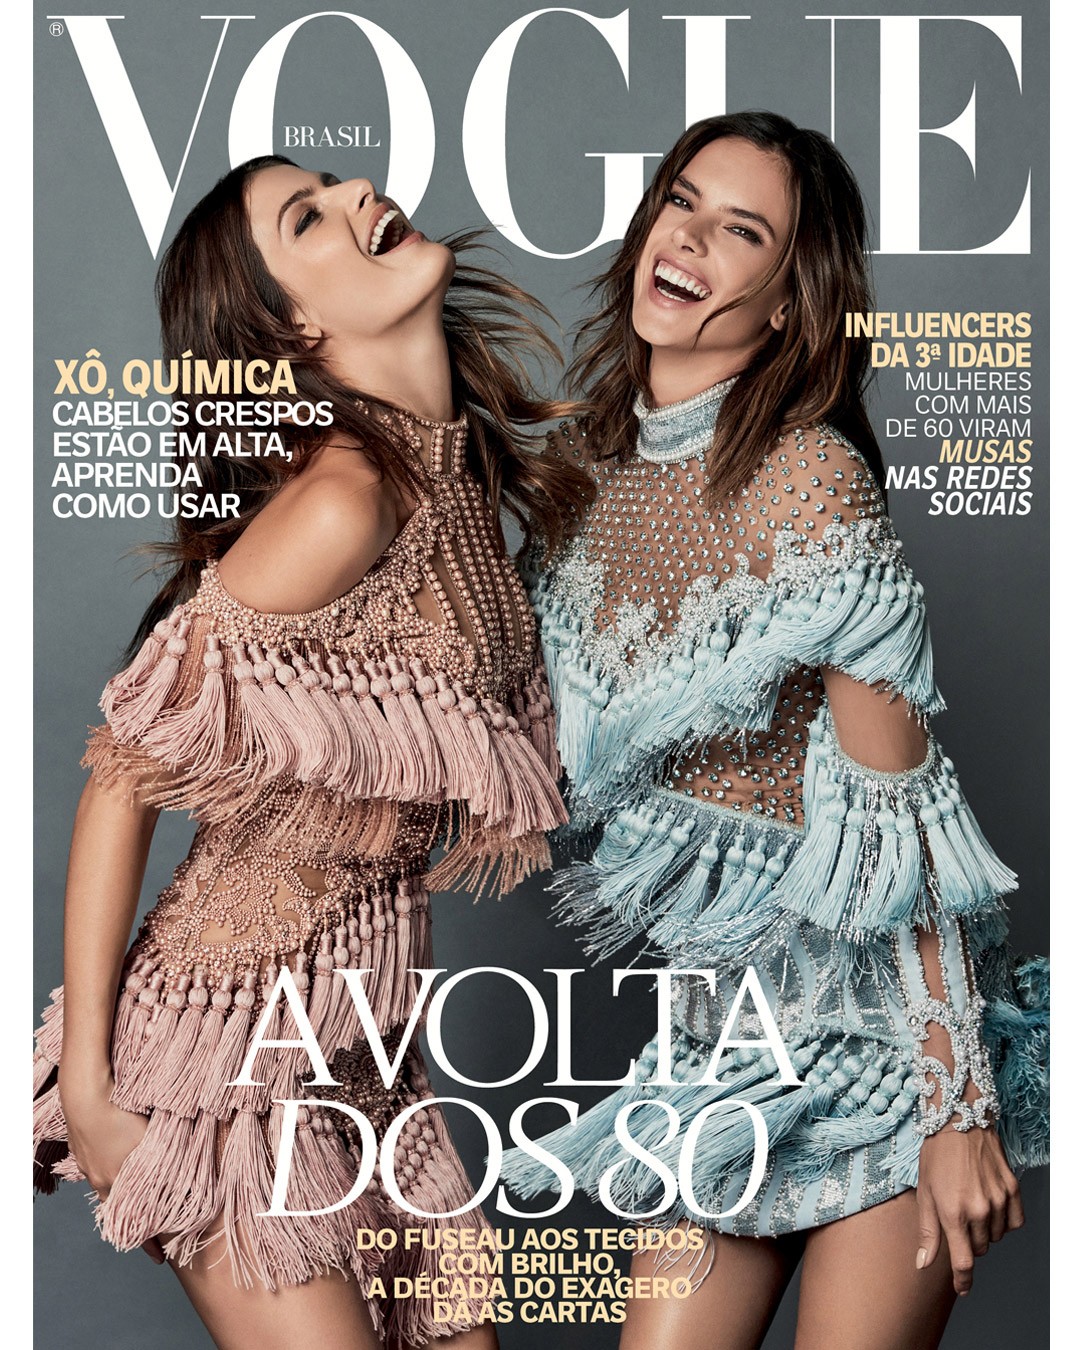 Vogue de outubro (Foto: Divulgação)